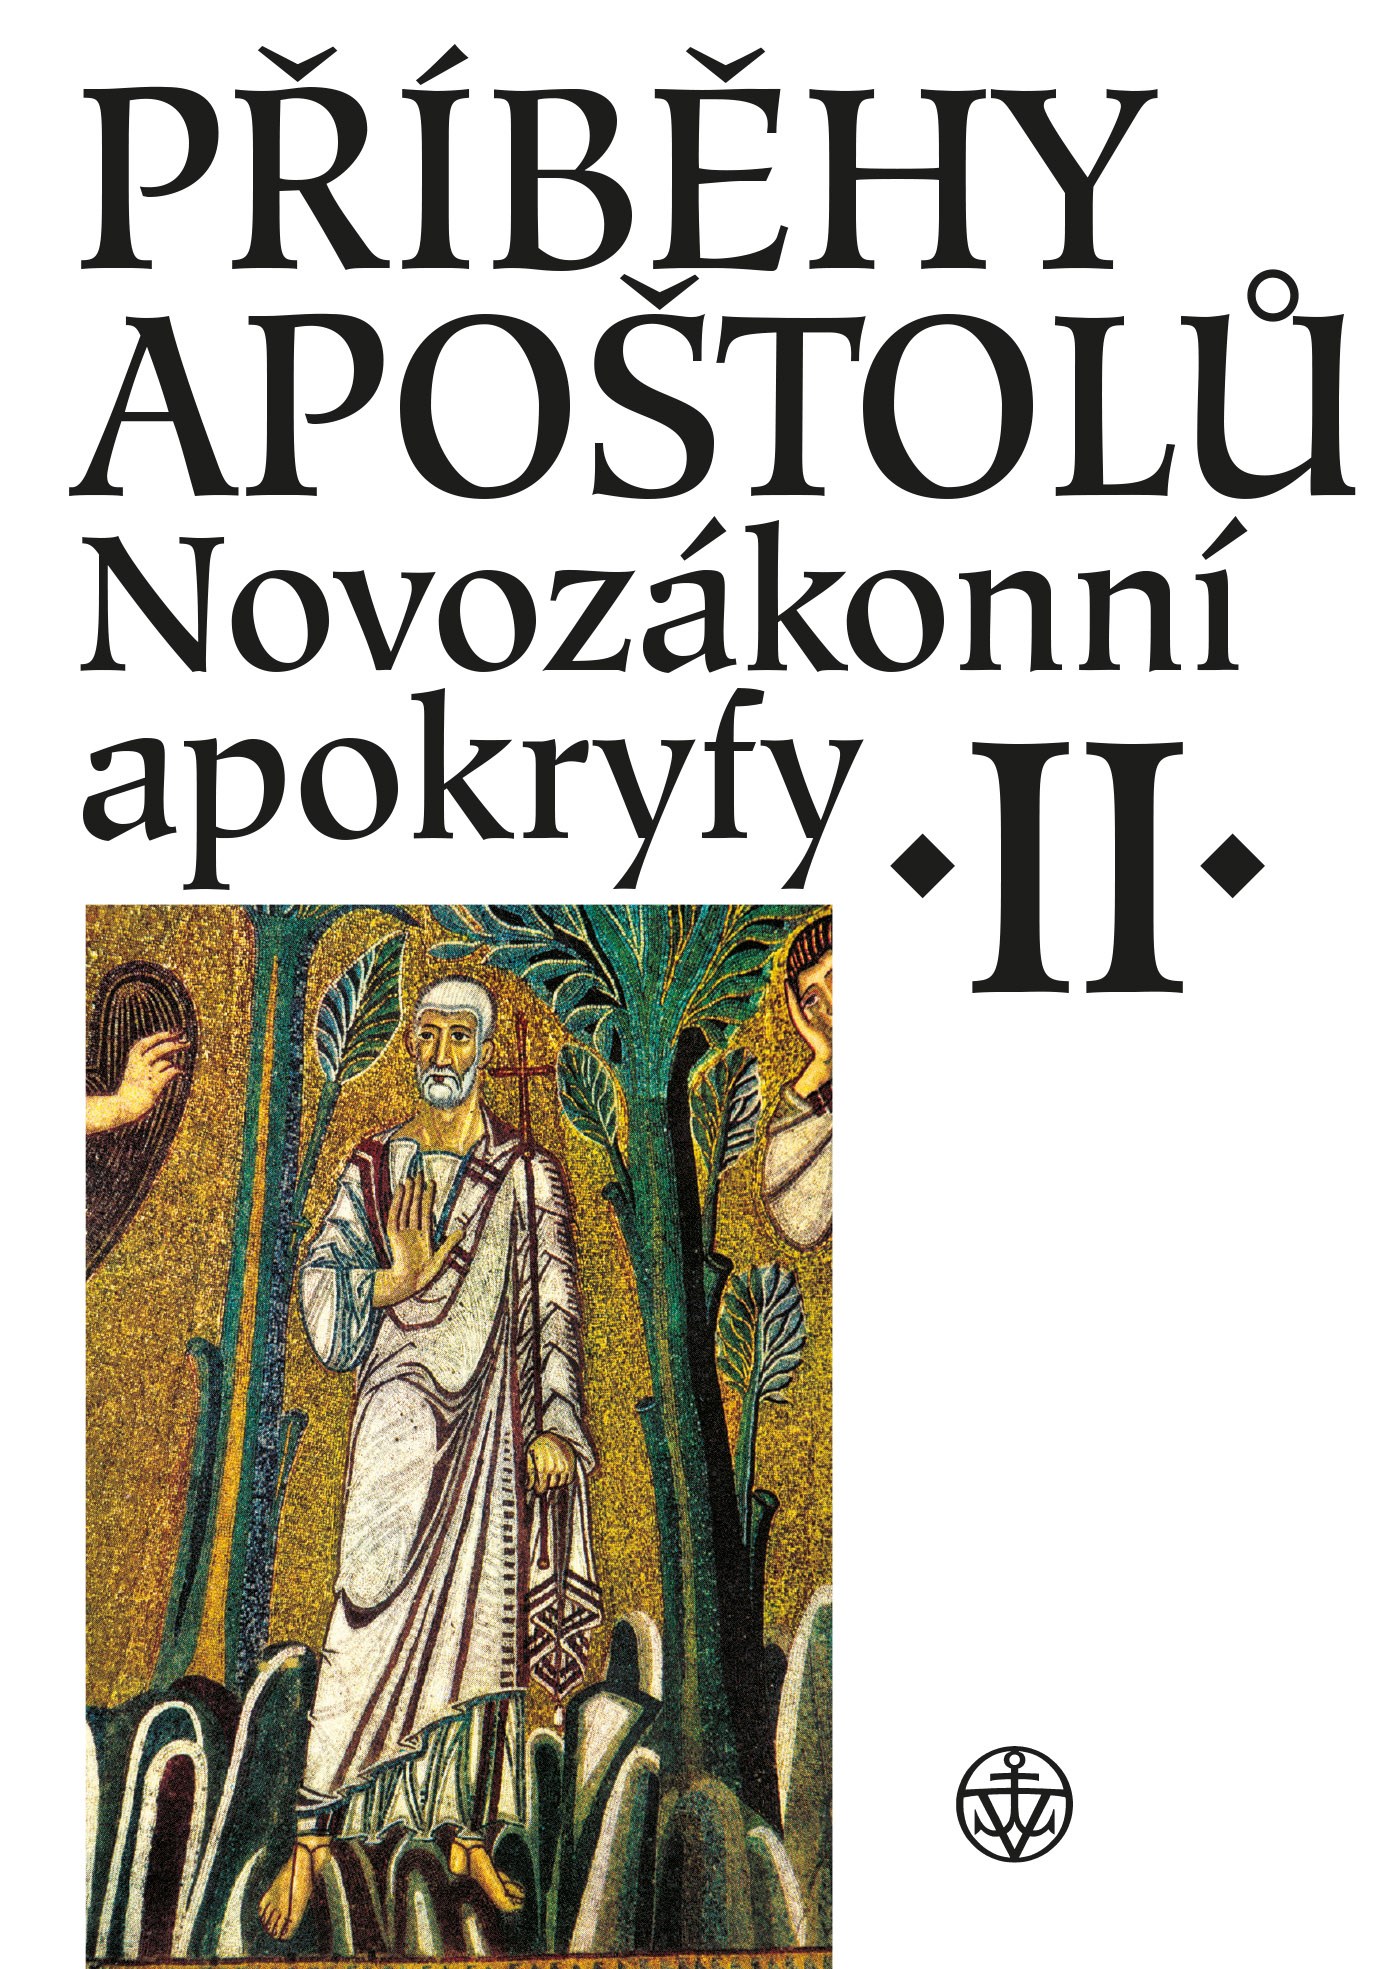 Příběhy apoštolů Novozákonní apokryfy II.